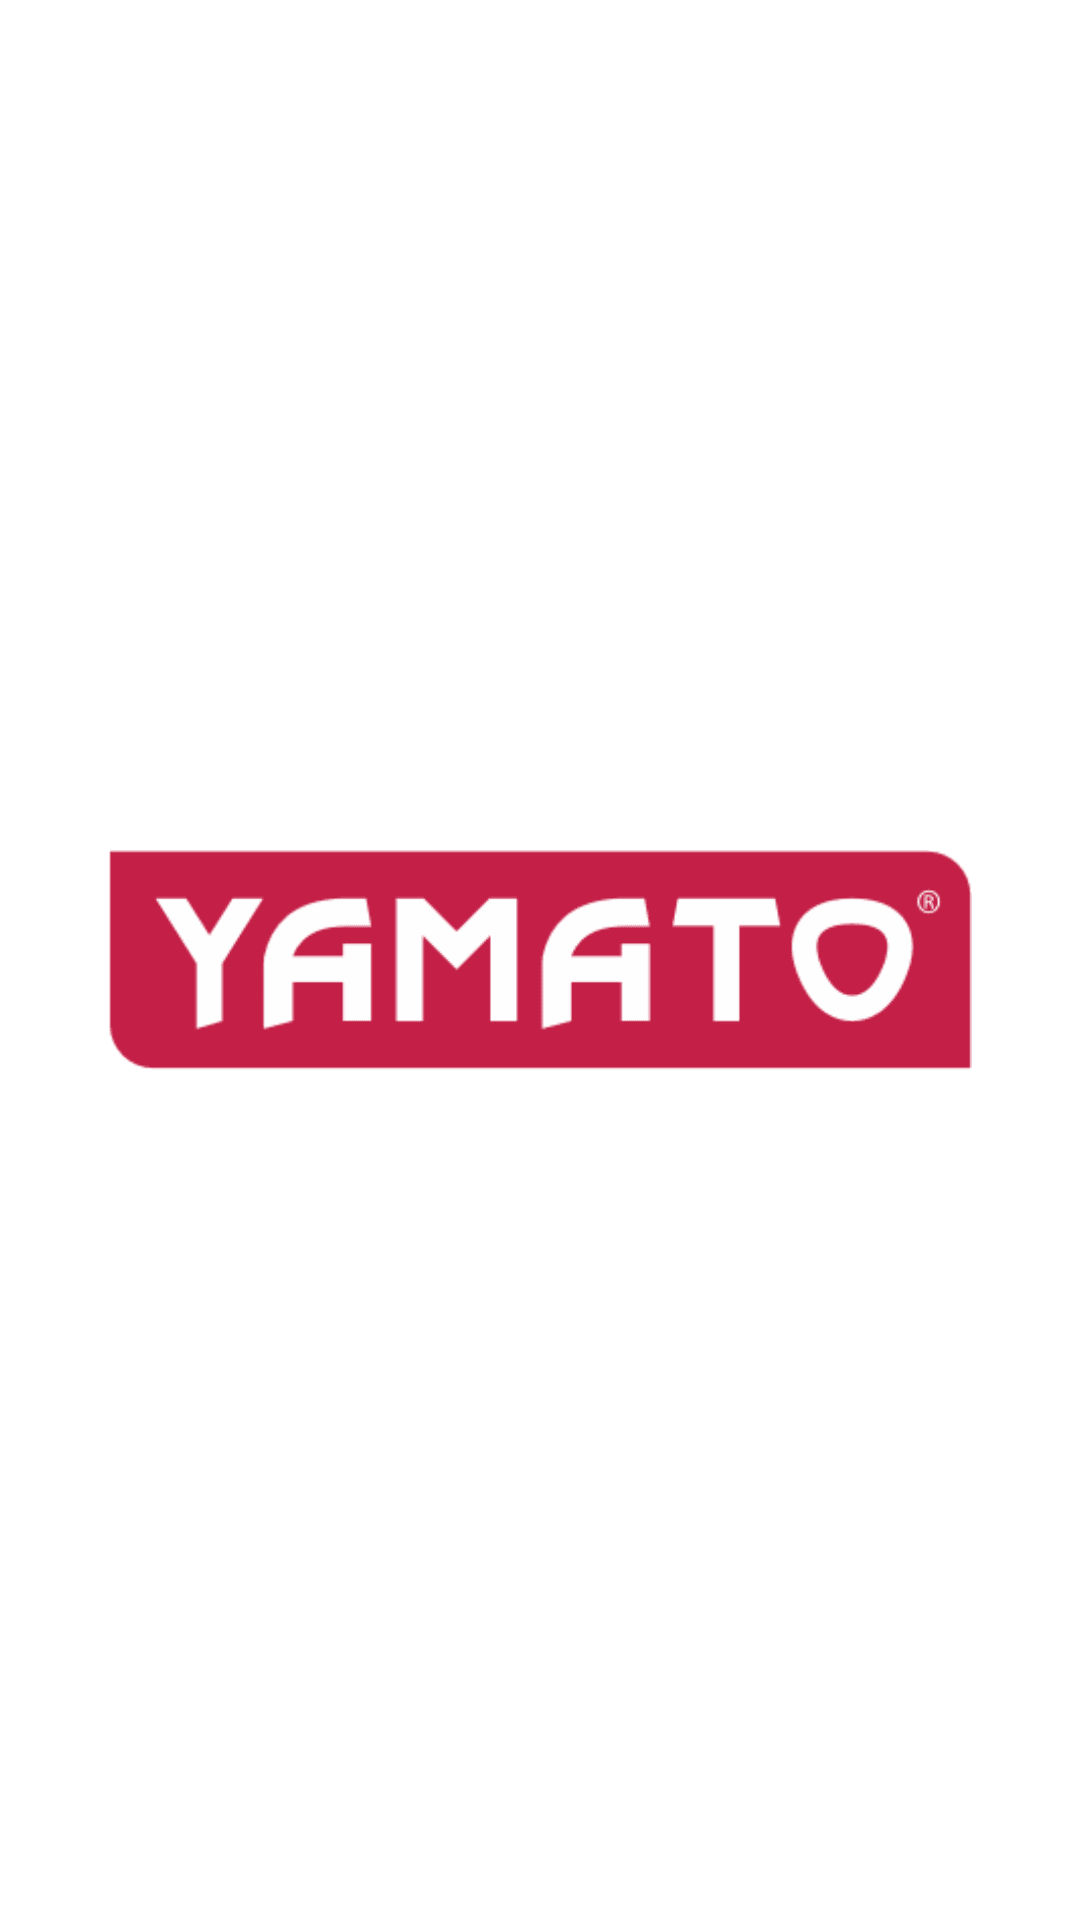 Yamato - Trapano a percussione elettrico 500Watt mandrino ø mm.13 Yamato